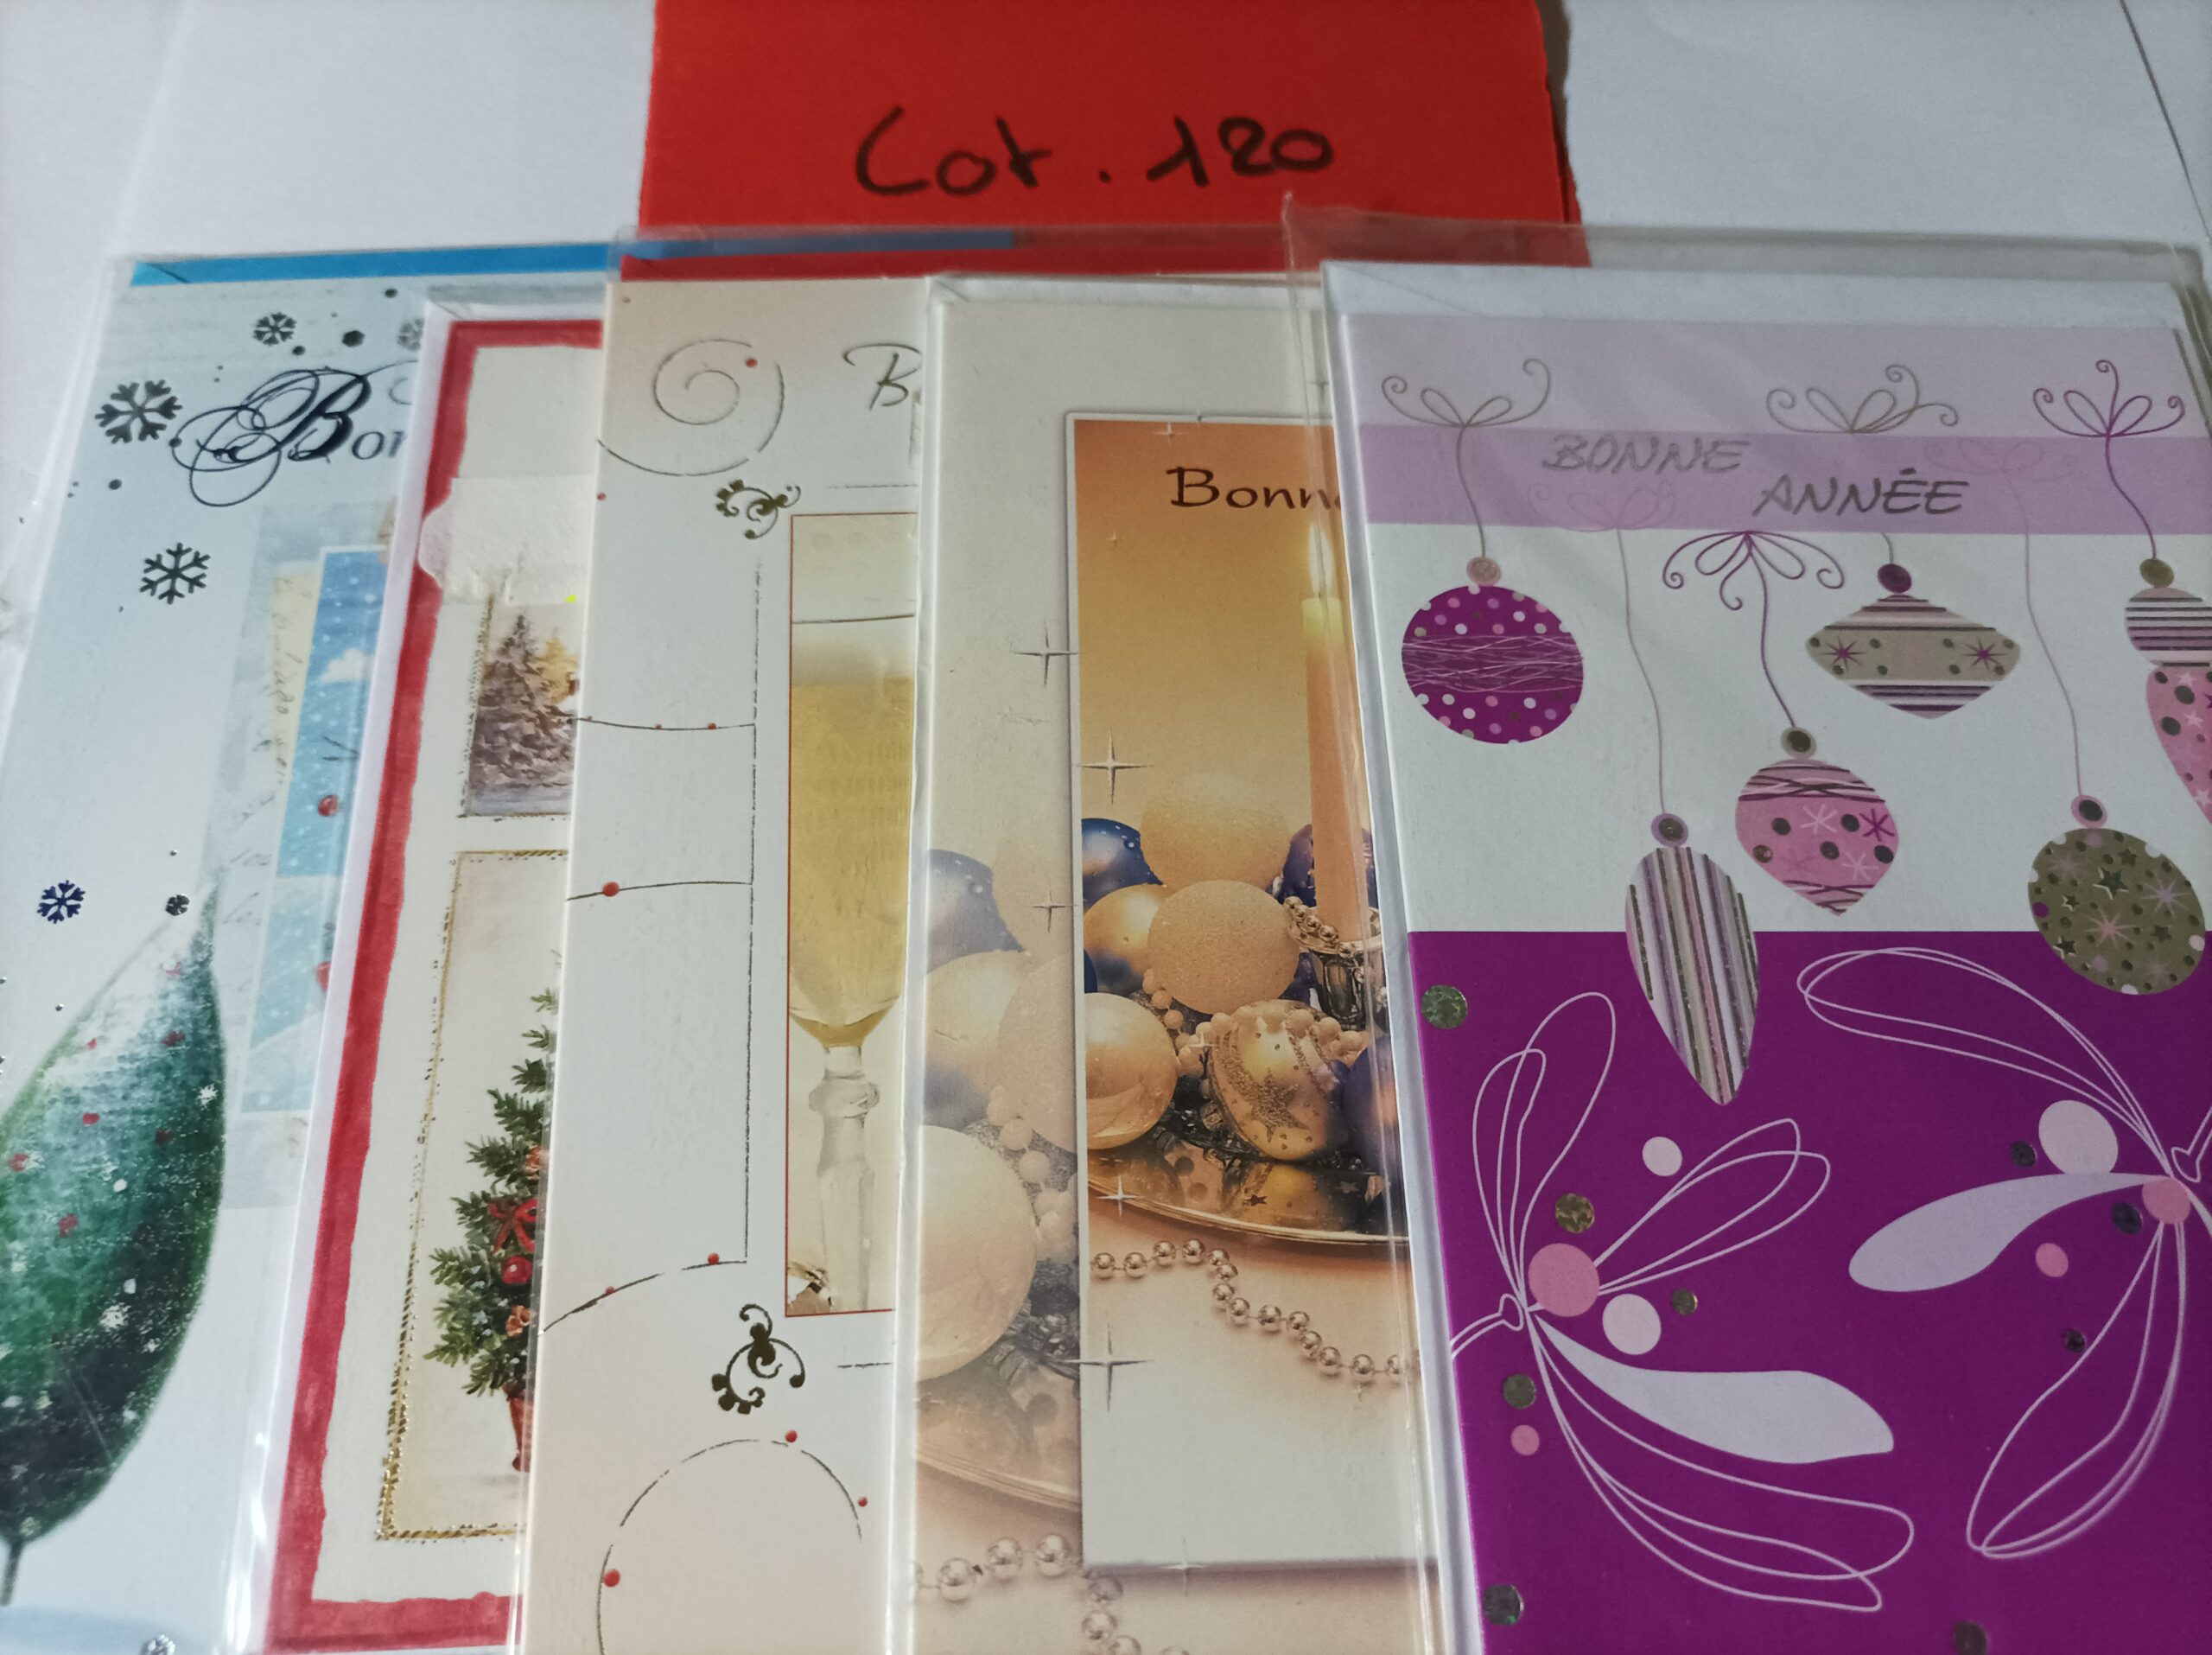 Lot de 5 cartes postales + enveloppes bonne année (lot 120)